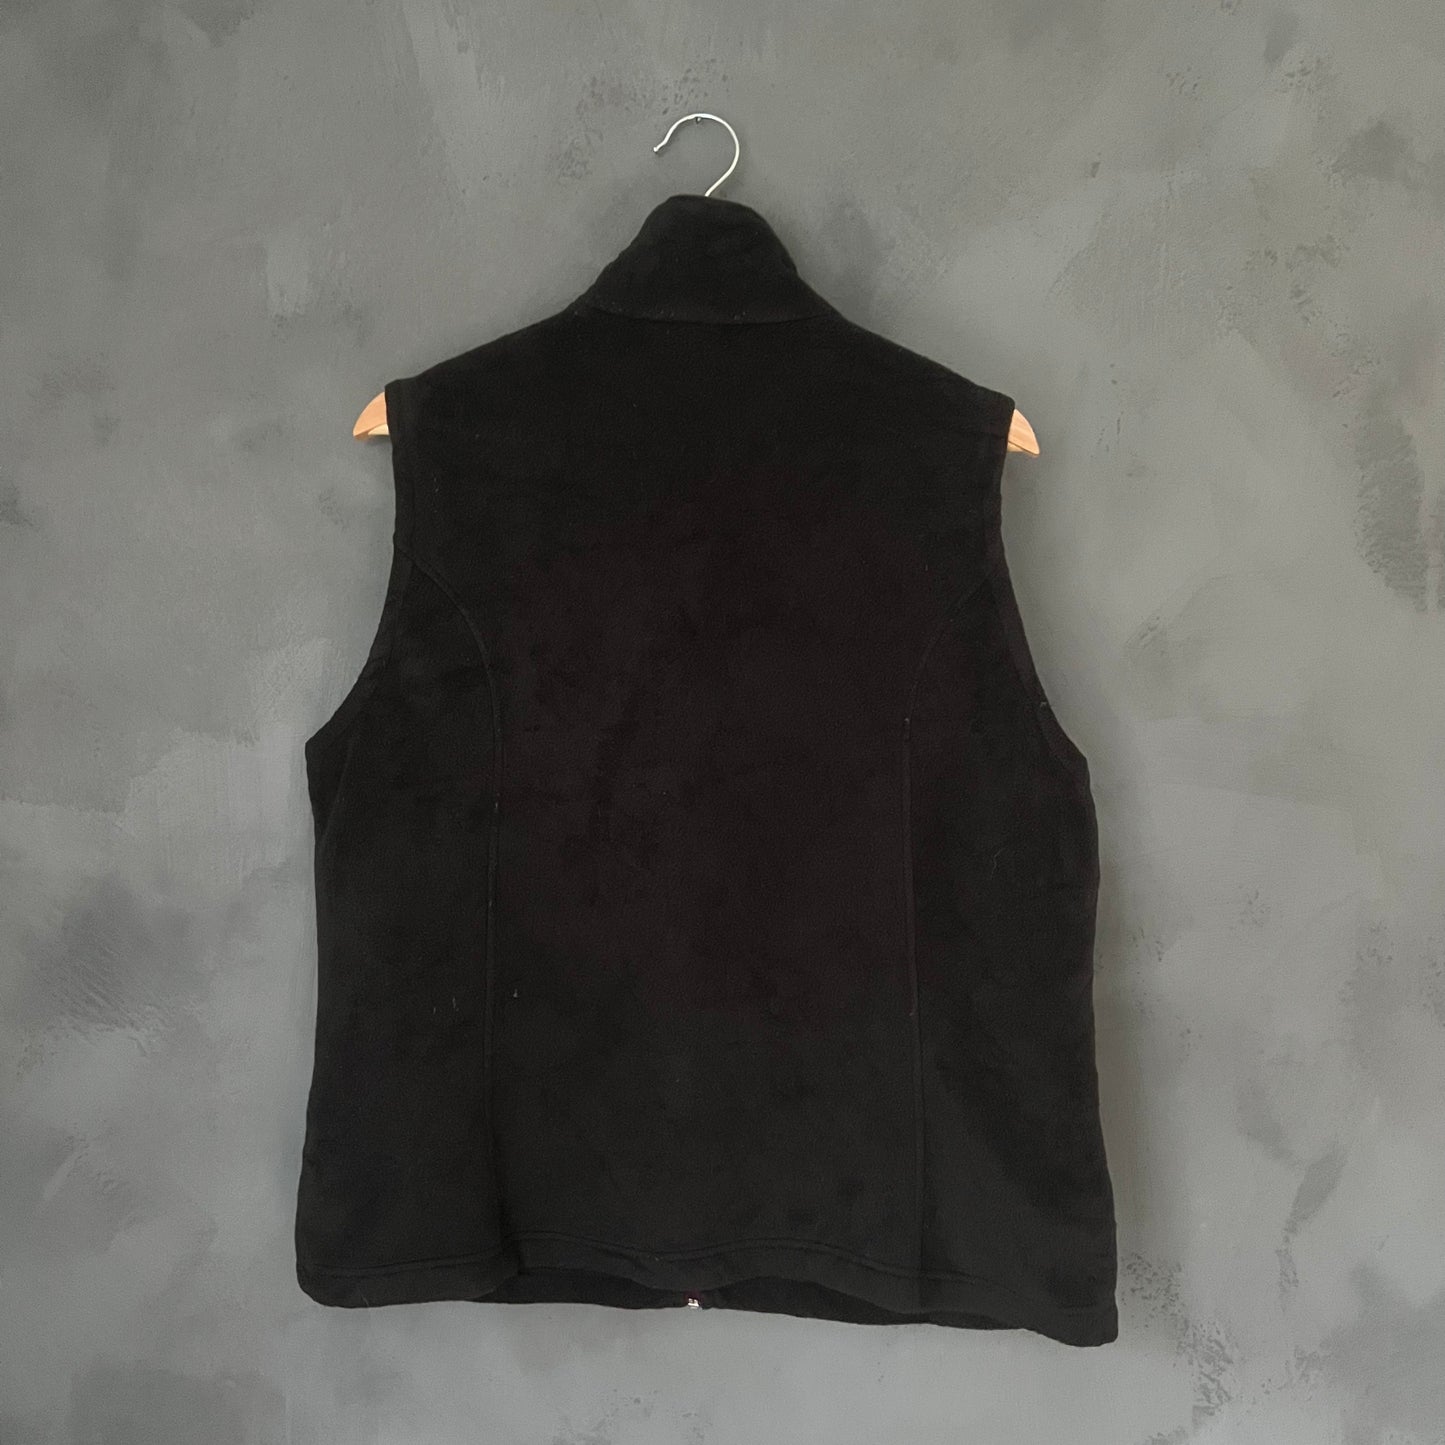 Columbia Zip-up Fleece Vest (XL)